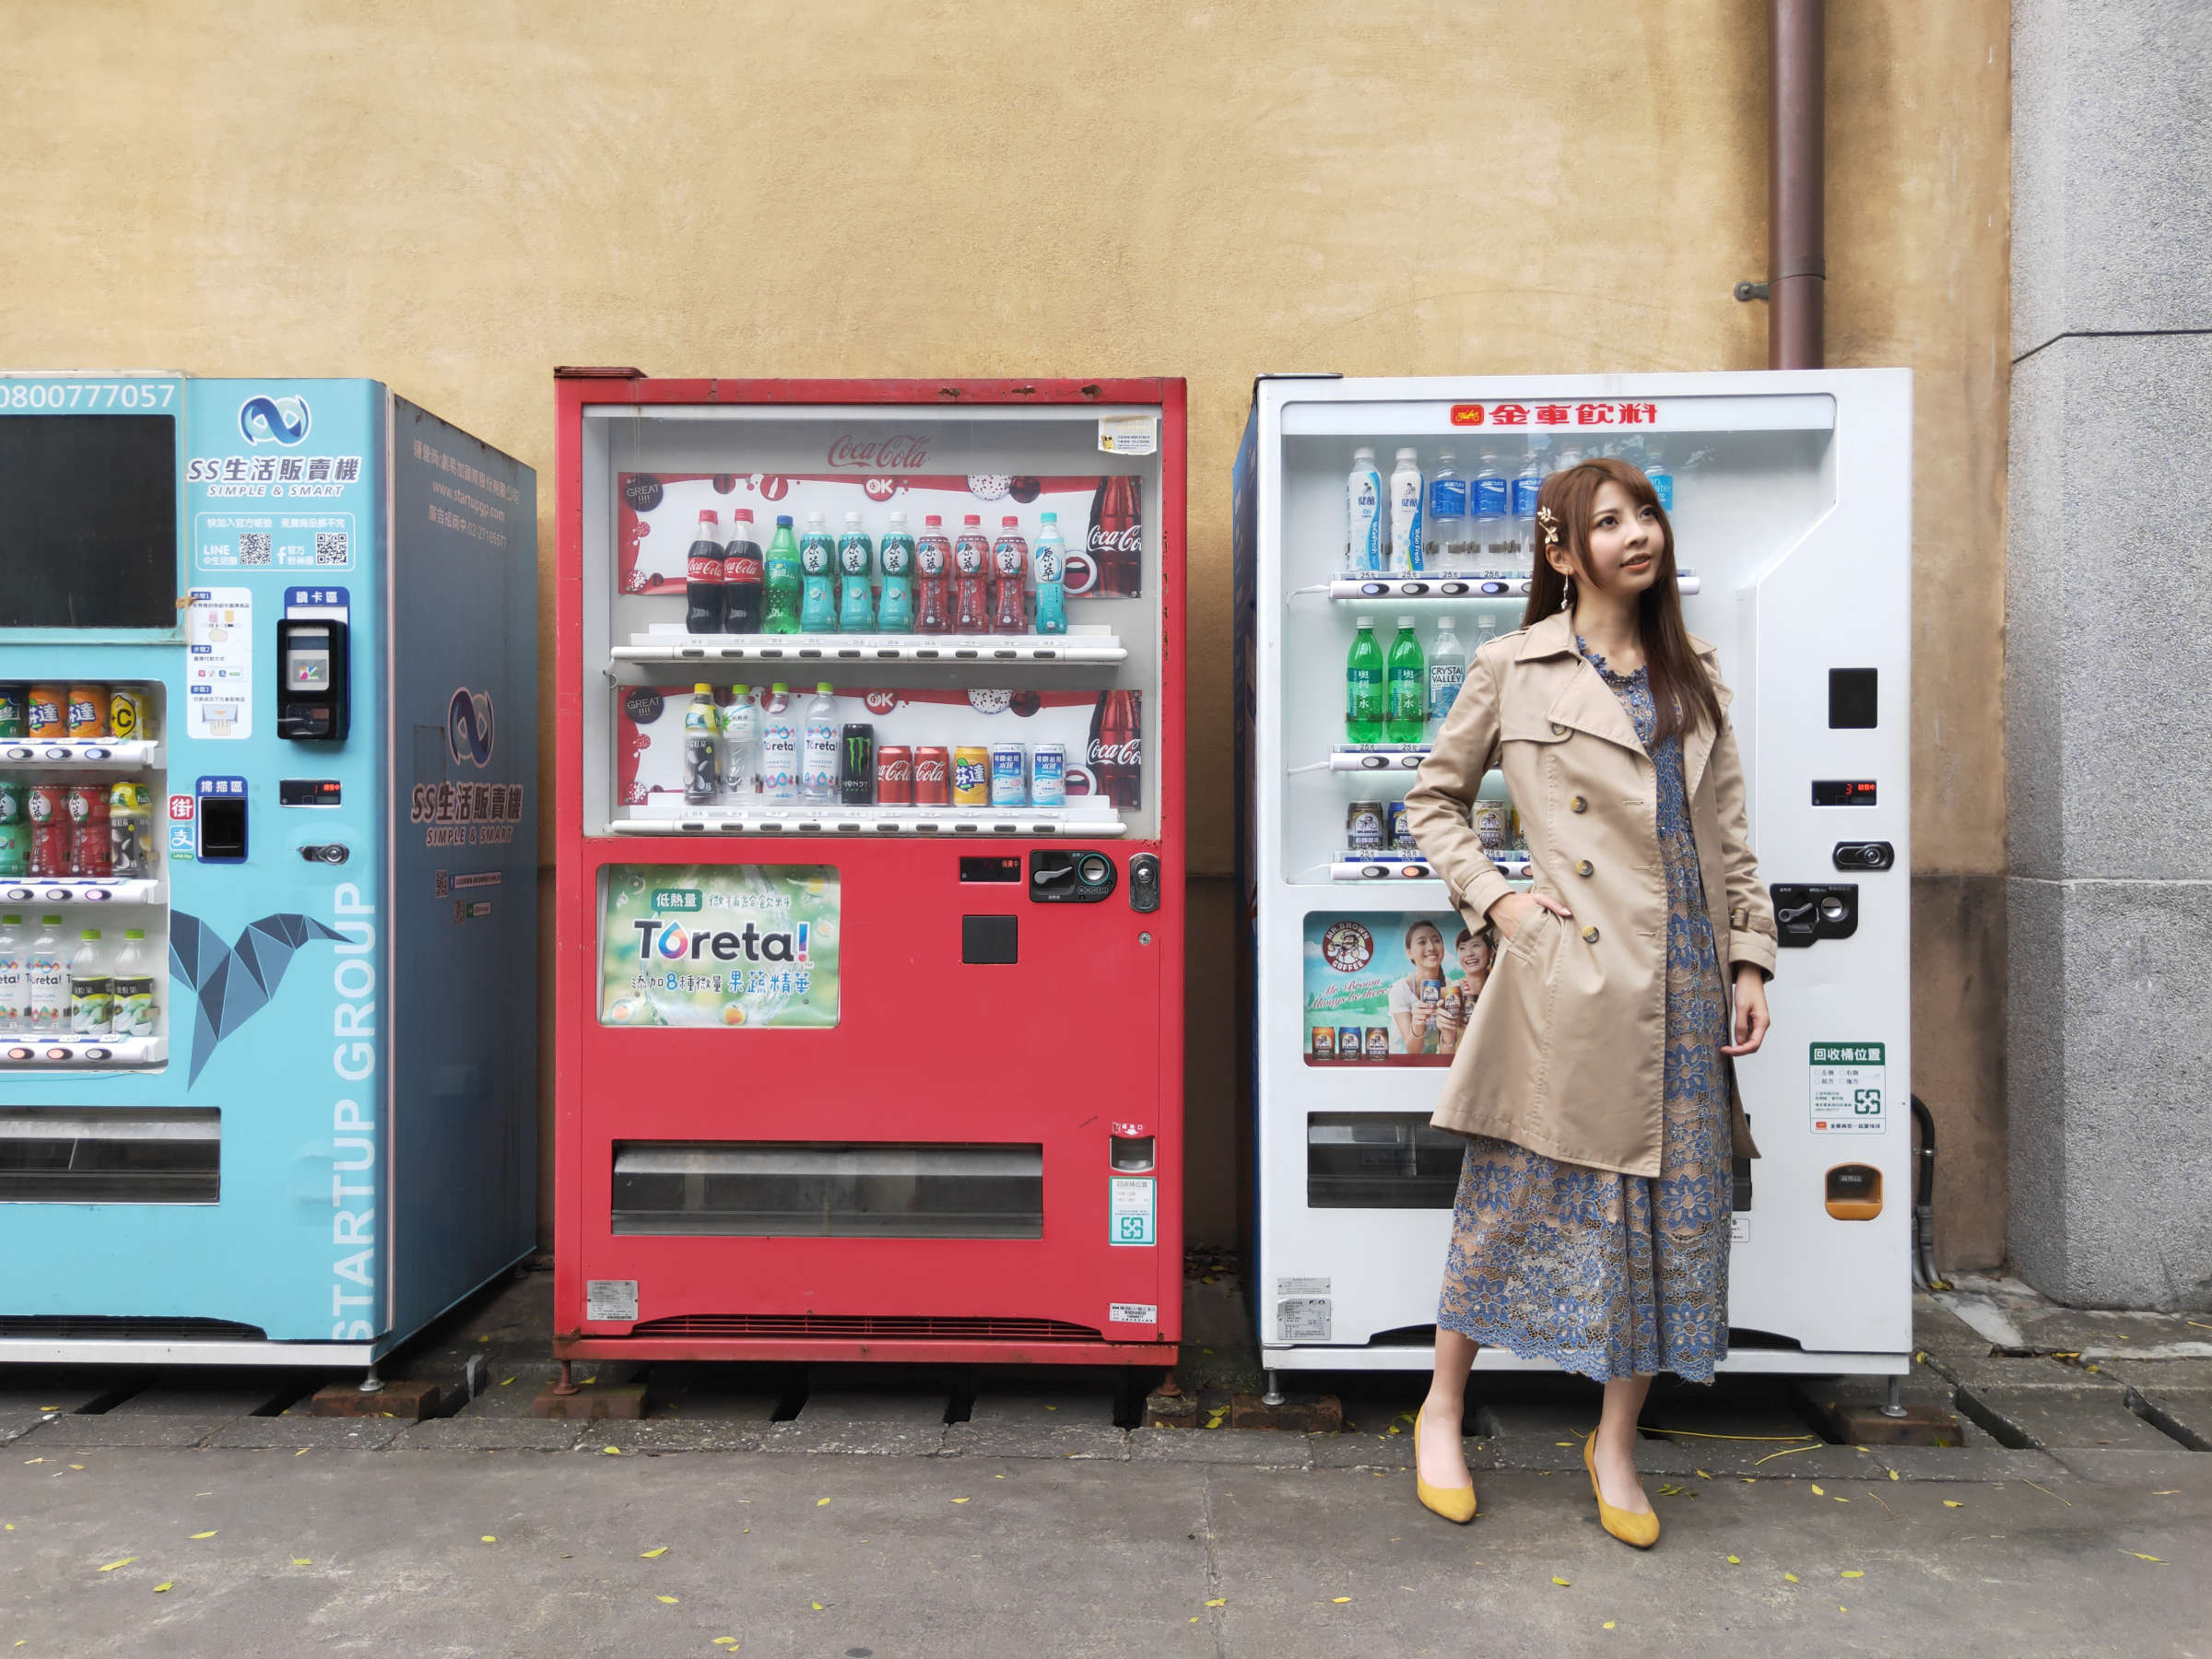 Vending Machines, vending machine, vending machine, machine